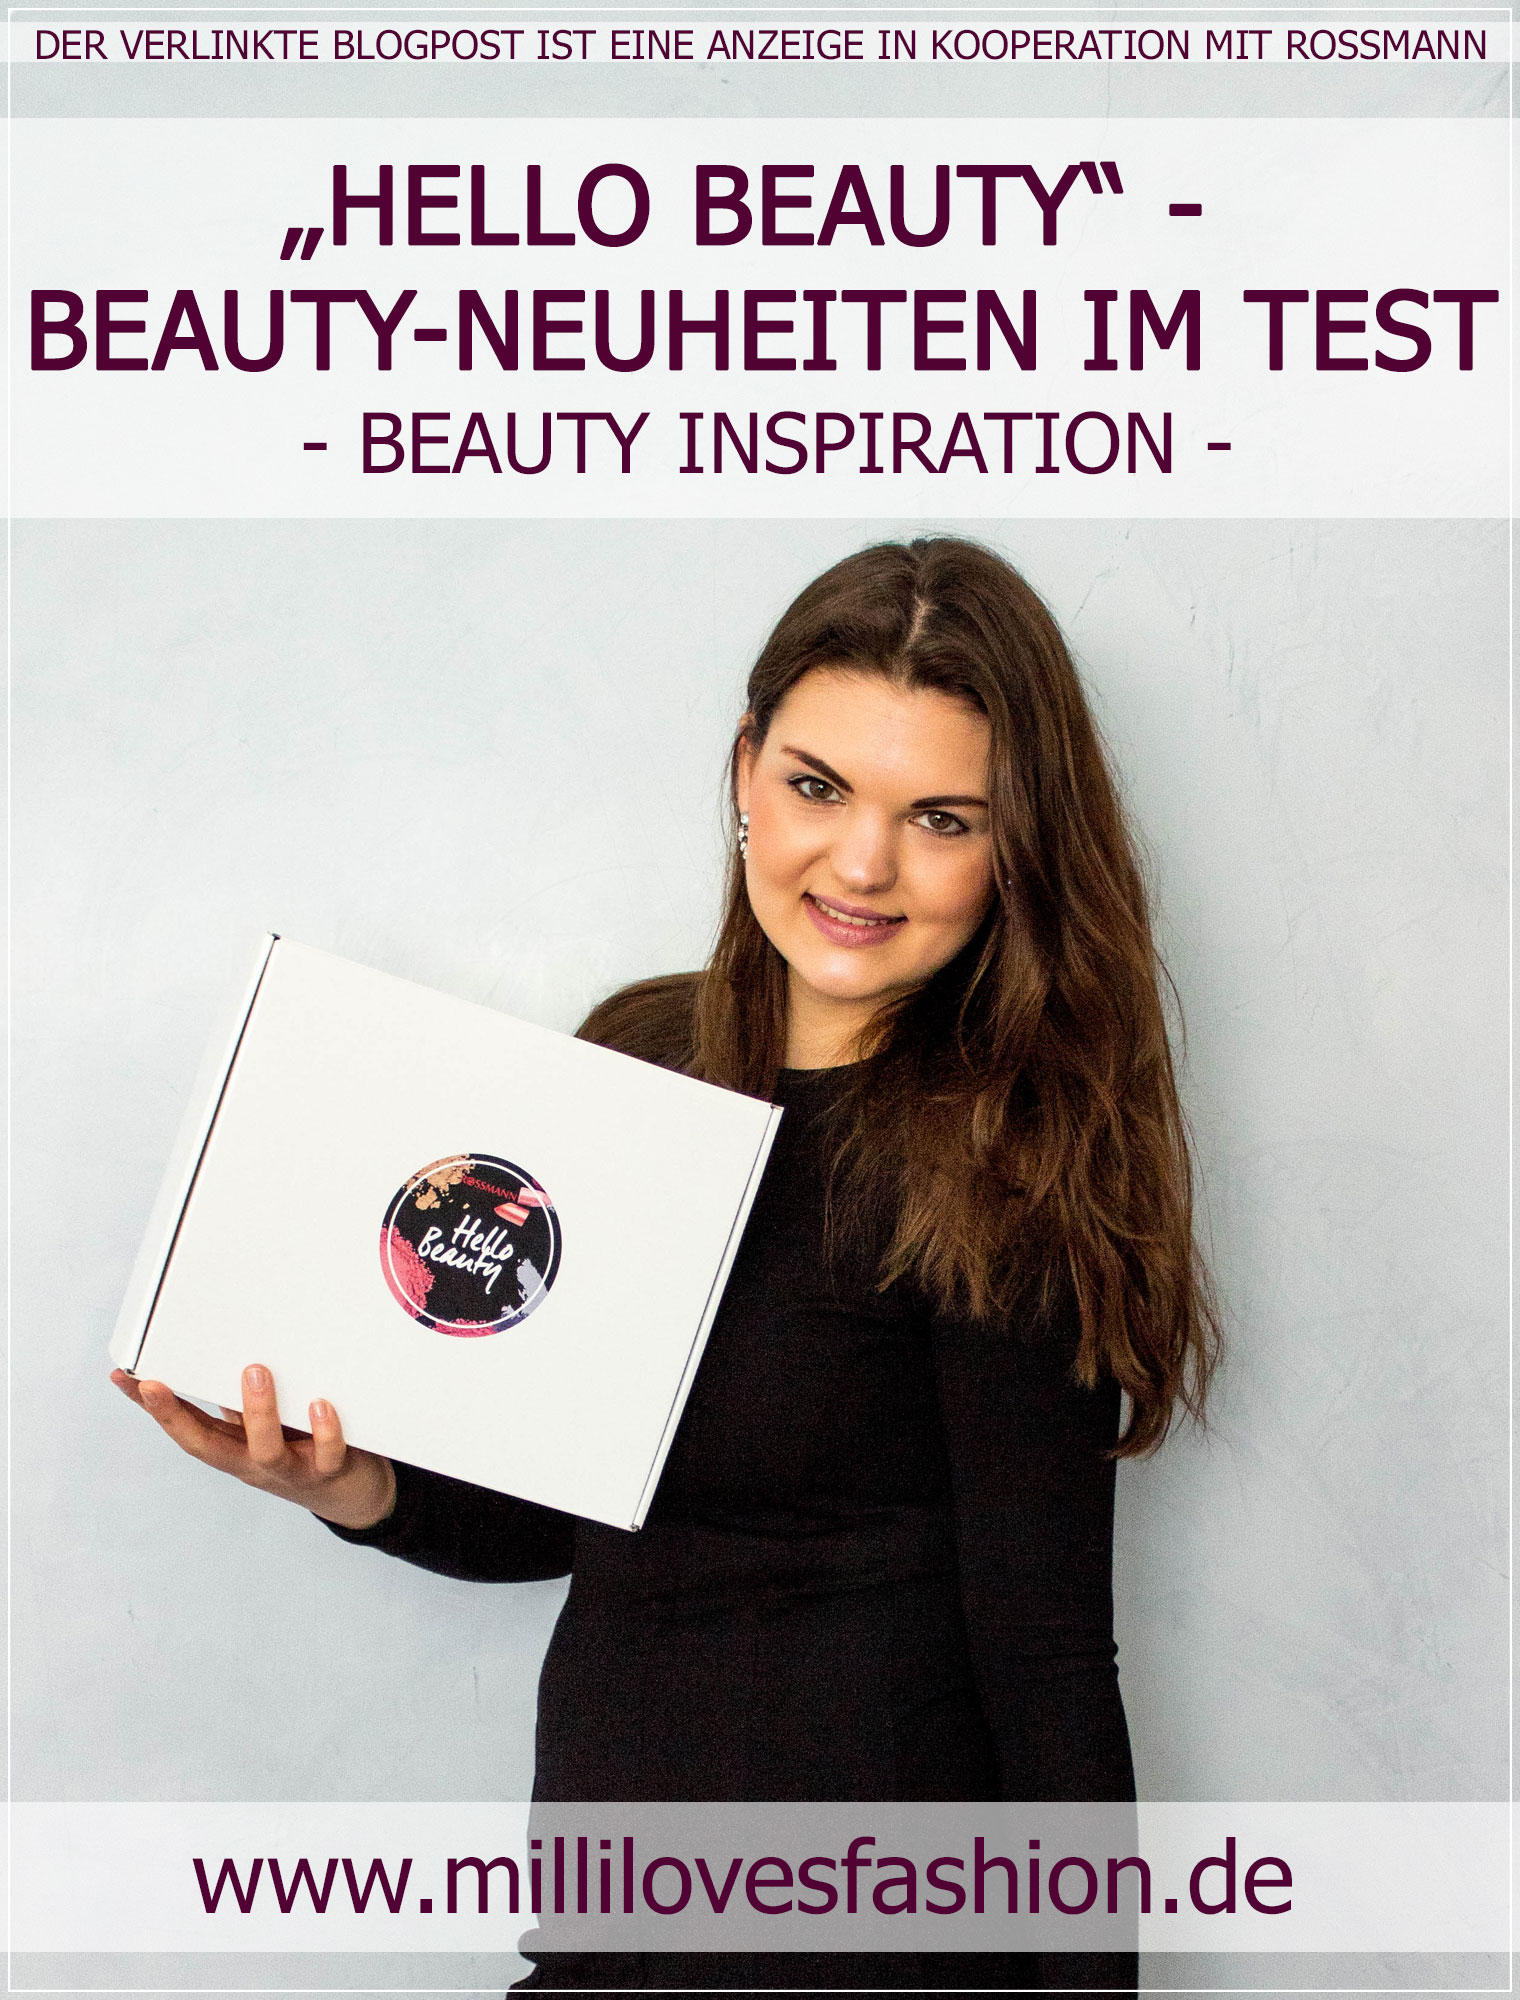 Blogger Box, Rossmann, Beauty Neuheiten, Beautyprodukte, Alterra, Beautyblogger, Ruhrgebiet, Beautybloggerin, Blogger, Drogerie Neuheiten, Drogerie Produkte